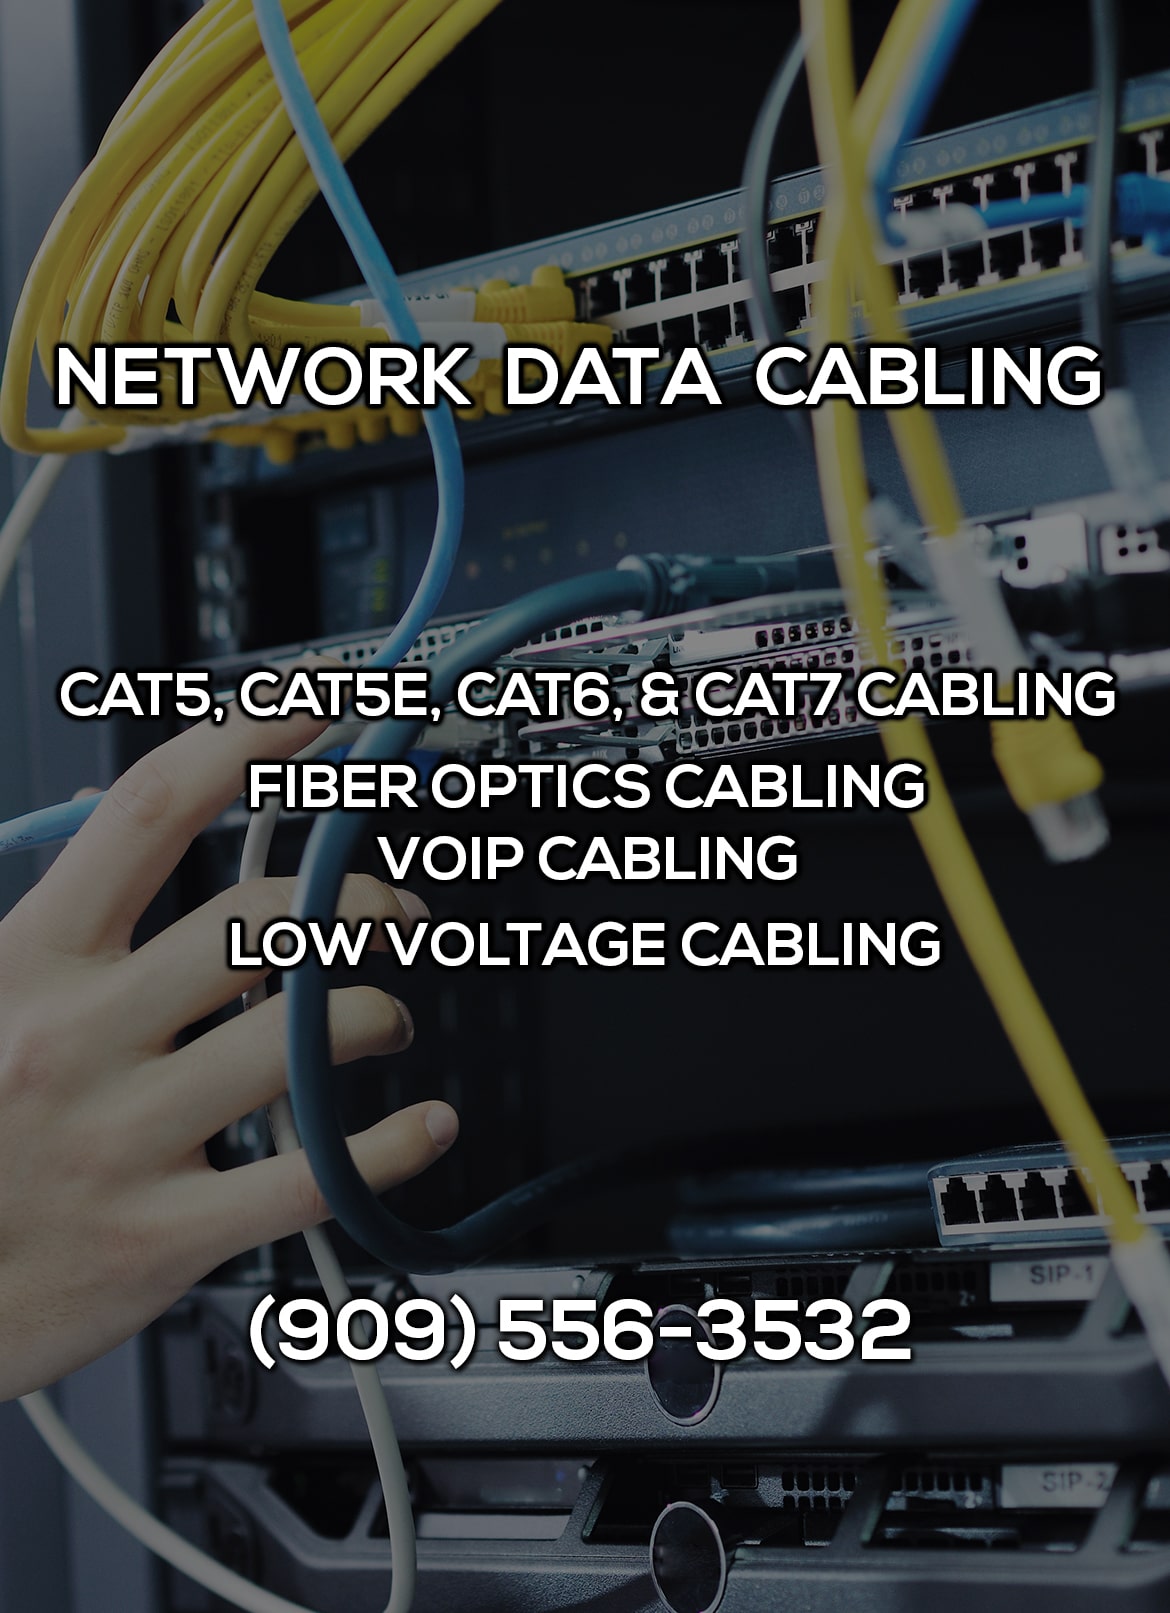 Network Data Cabling in Hemet CA